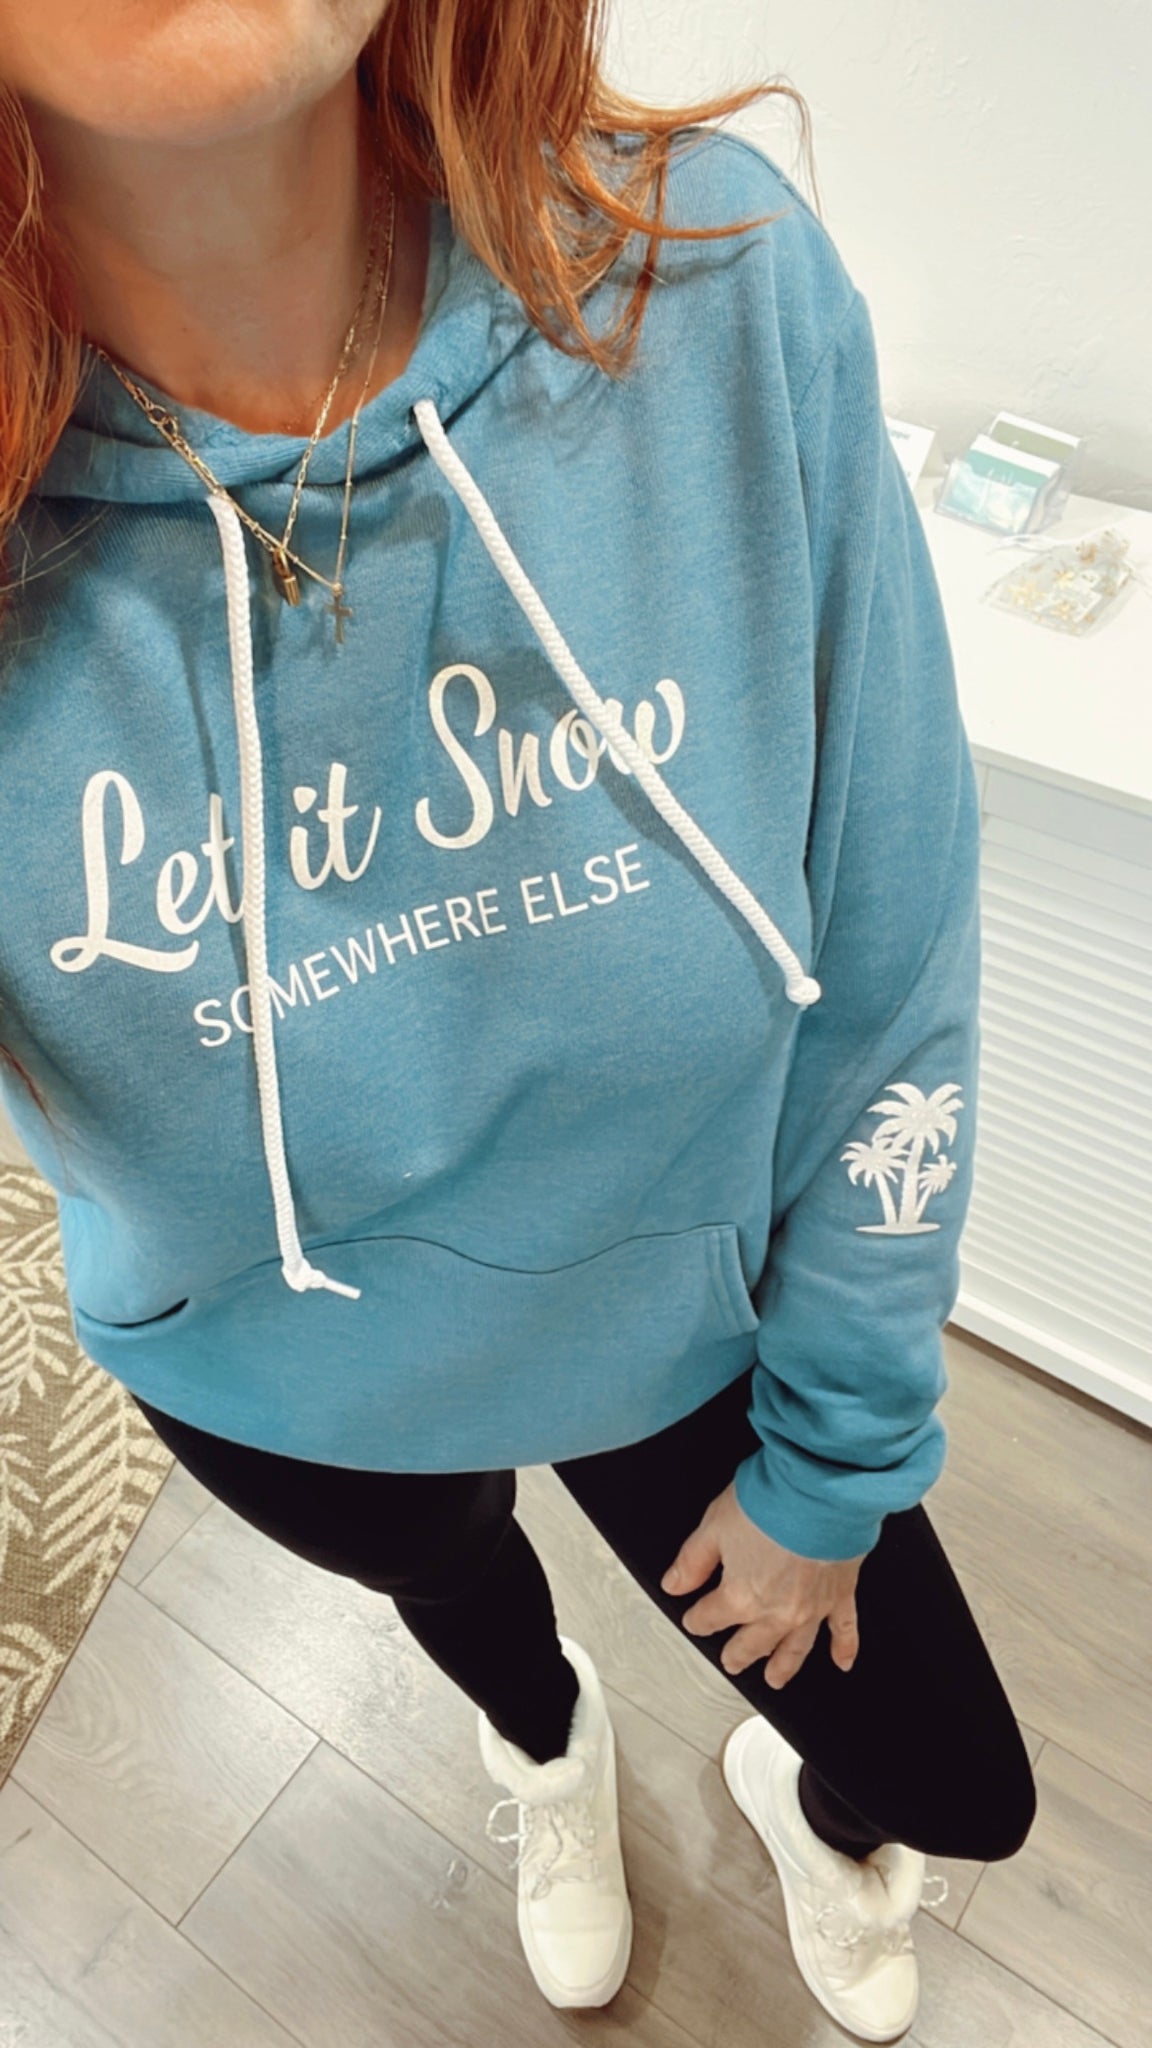 Let it Snow… somewhere else Hoodie